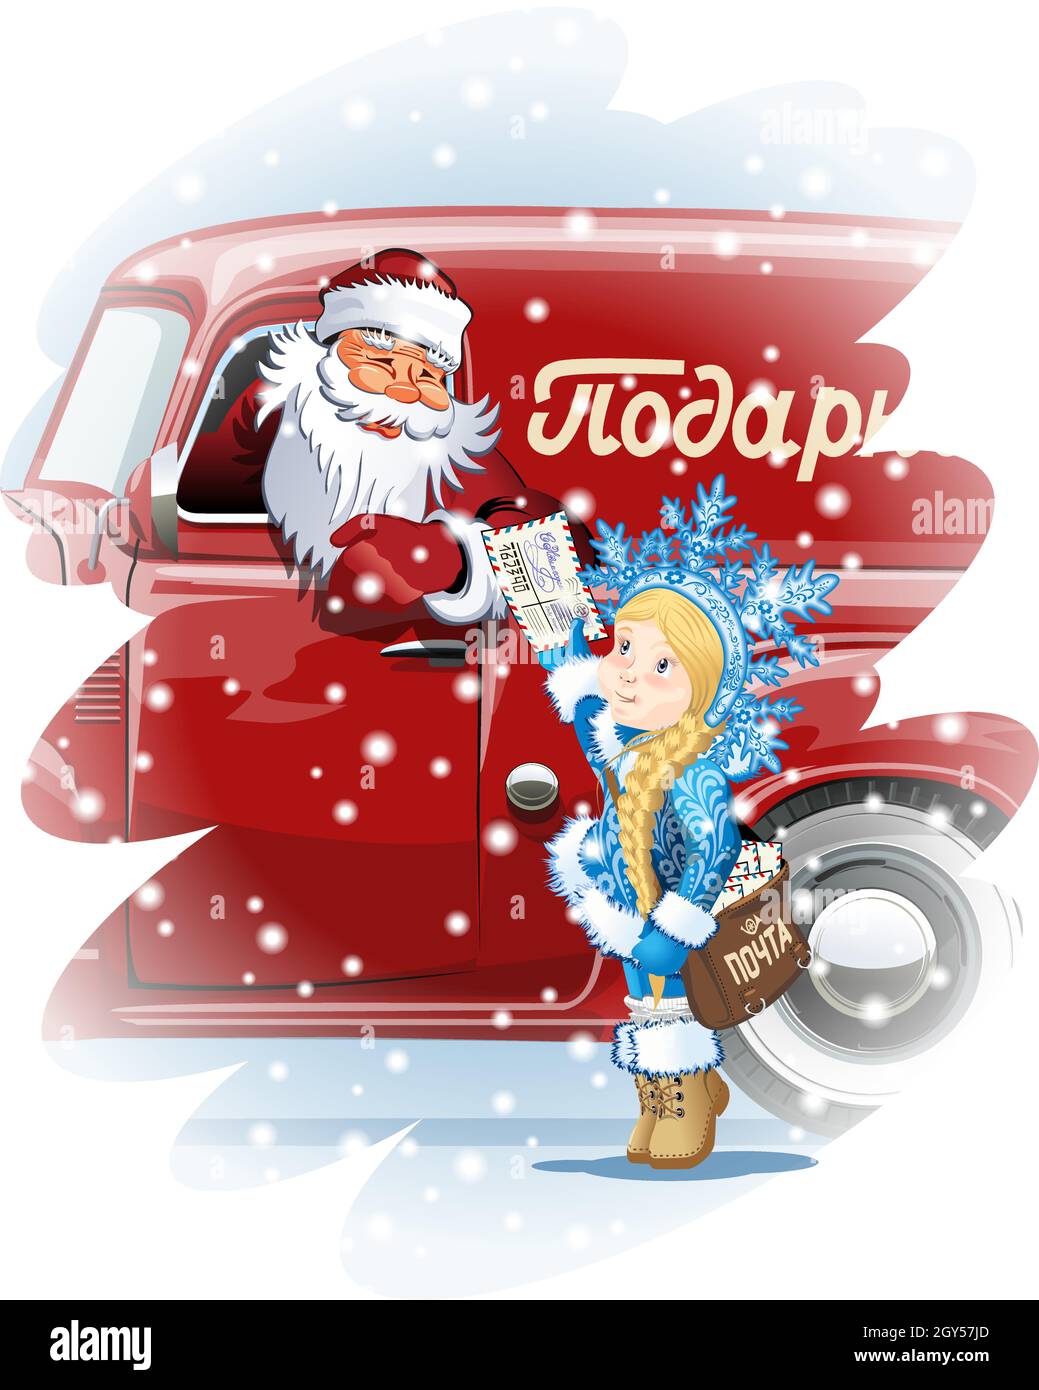 Cartoon Snow Maiden-Postman Snegurochka tradizionale russo personaggio di Natale con sacco di posta Traduci: Felice anno nuovo, regali e indirizzo di posta per posta Illustrazione Vettoriale